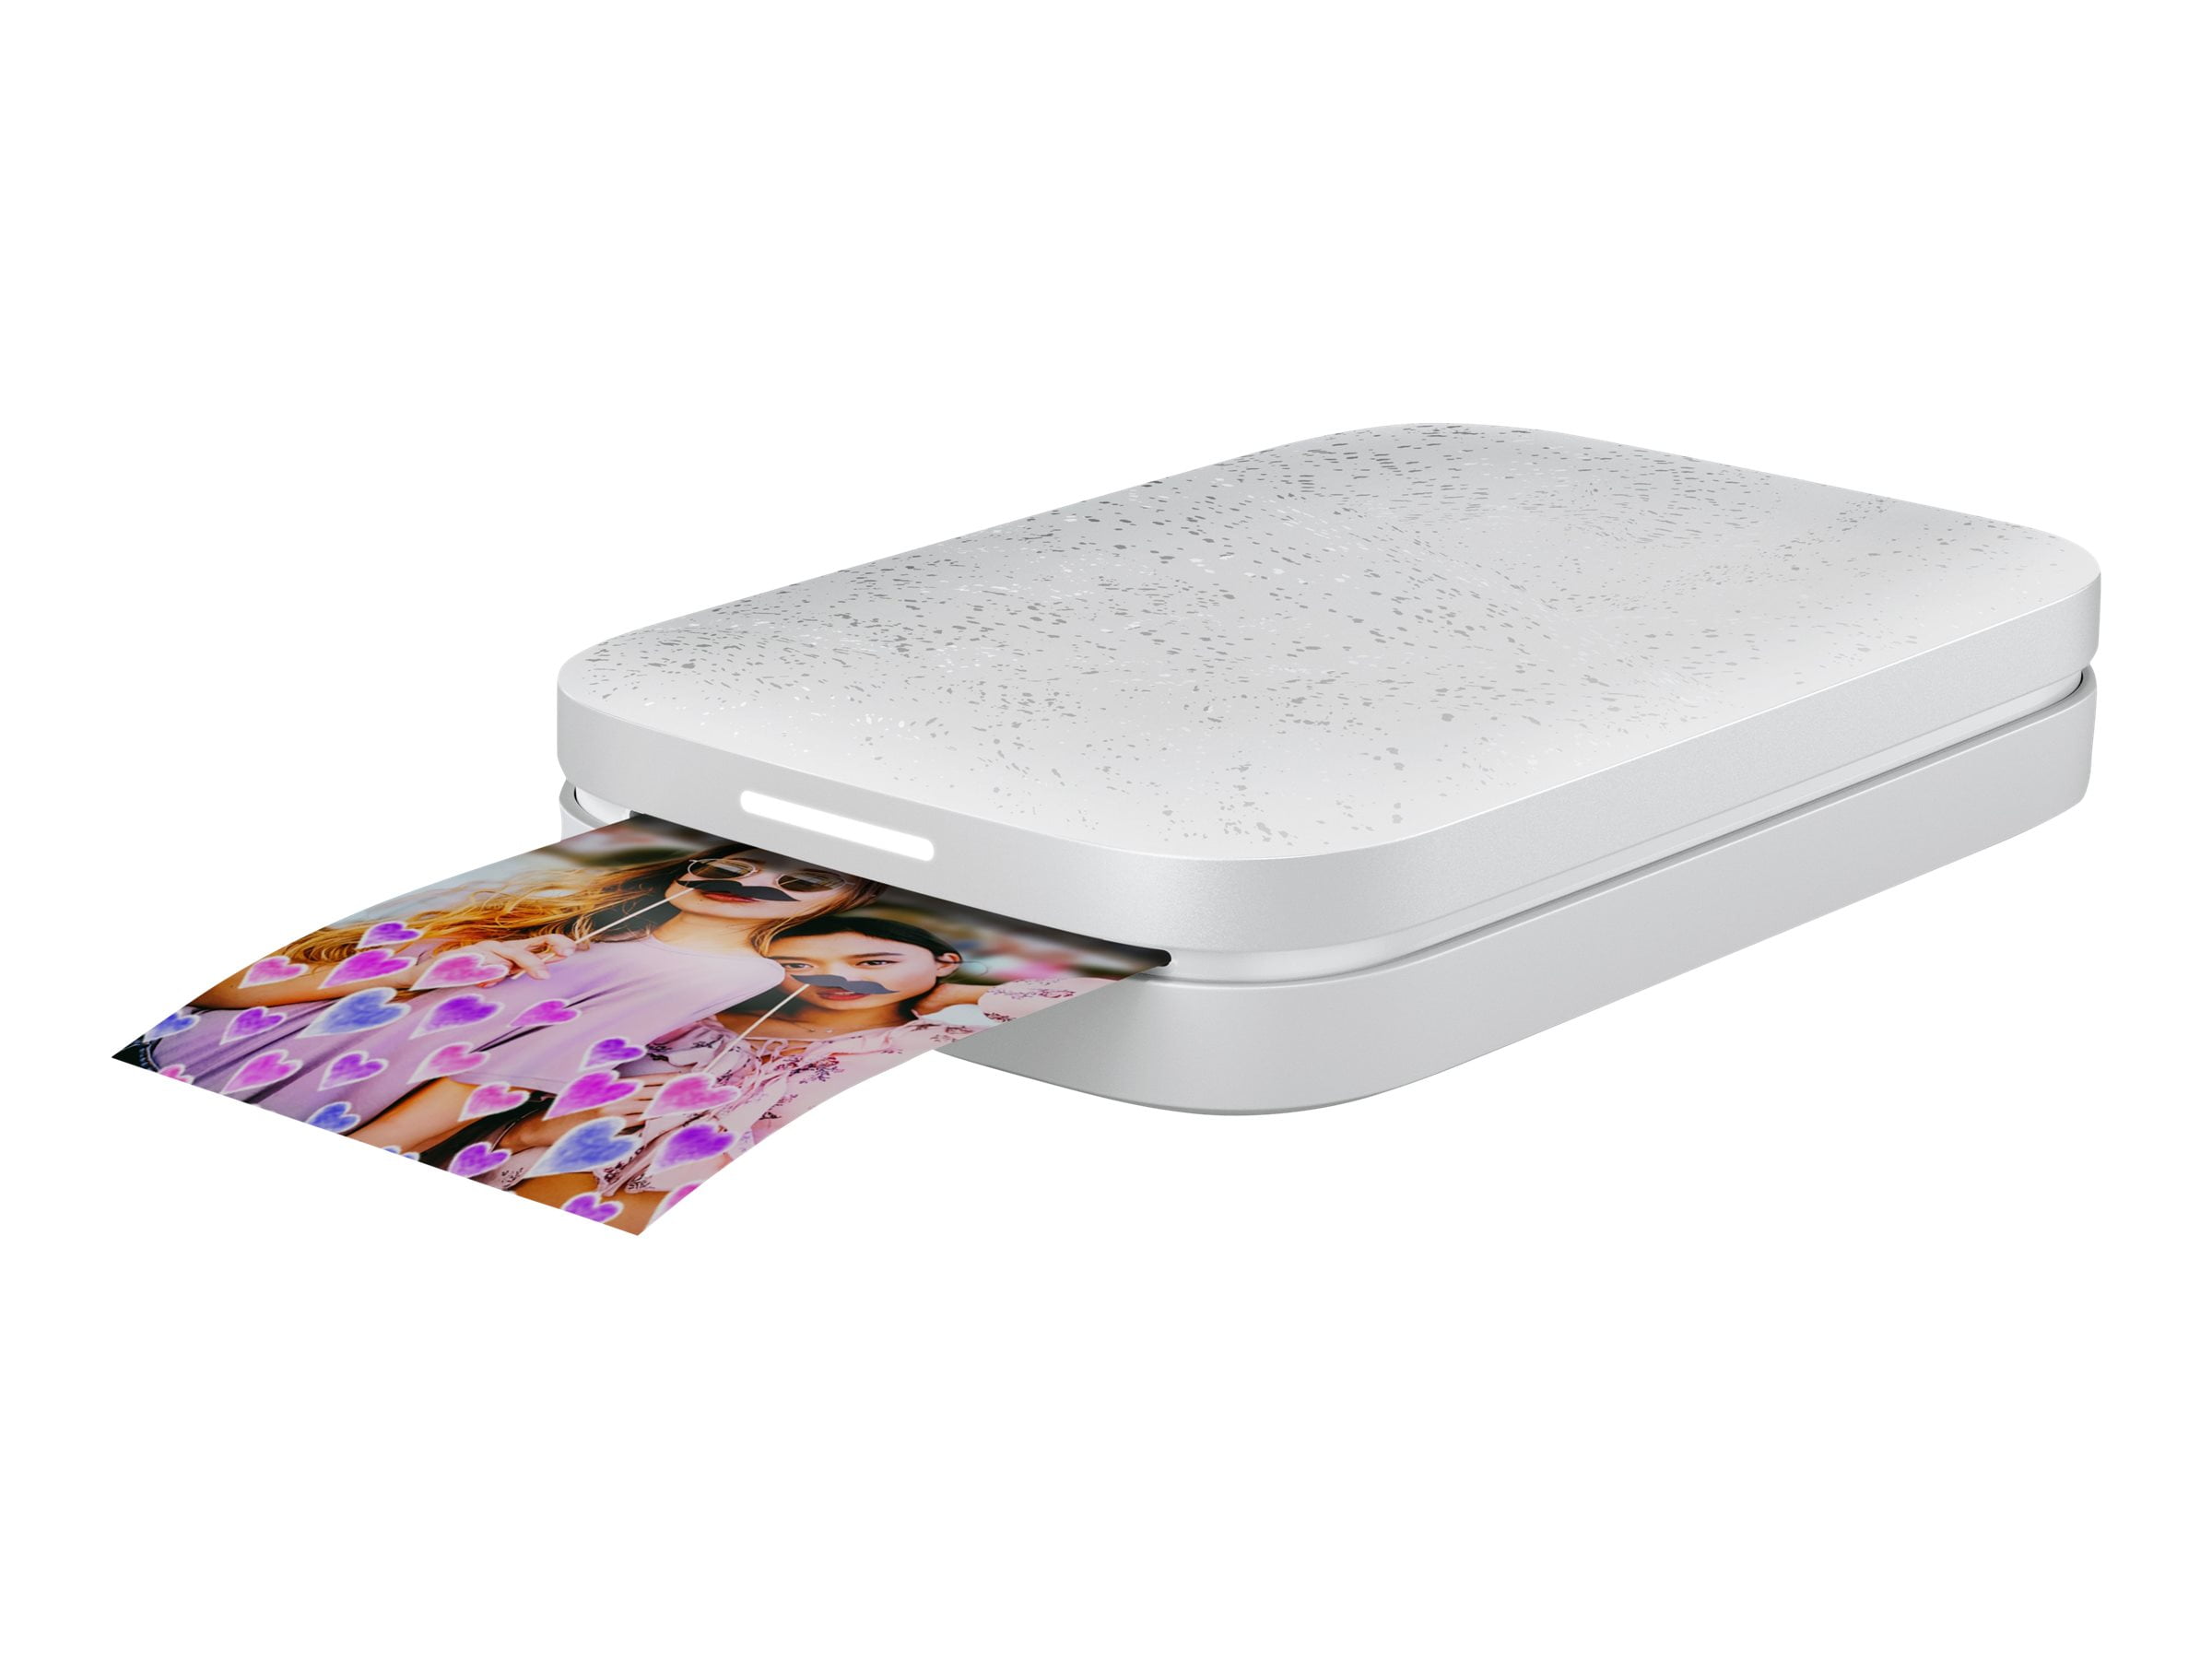 Imprimante photo instantanée portable HP Sprocket 2 x 3 (Luna